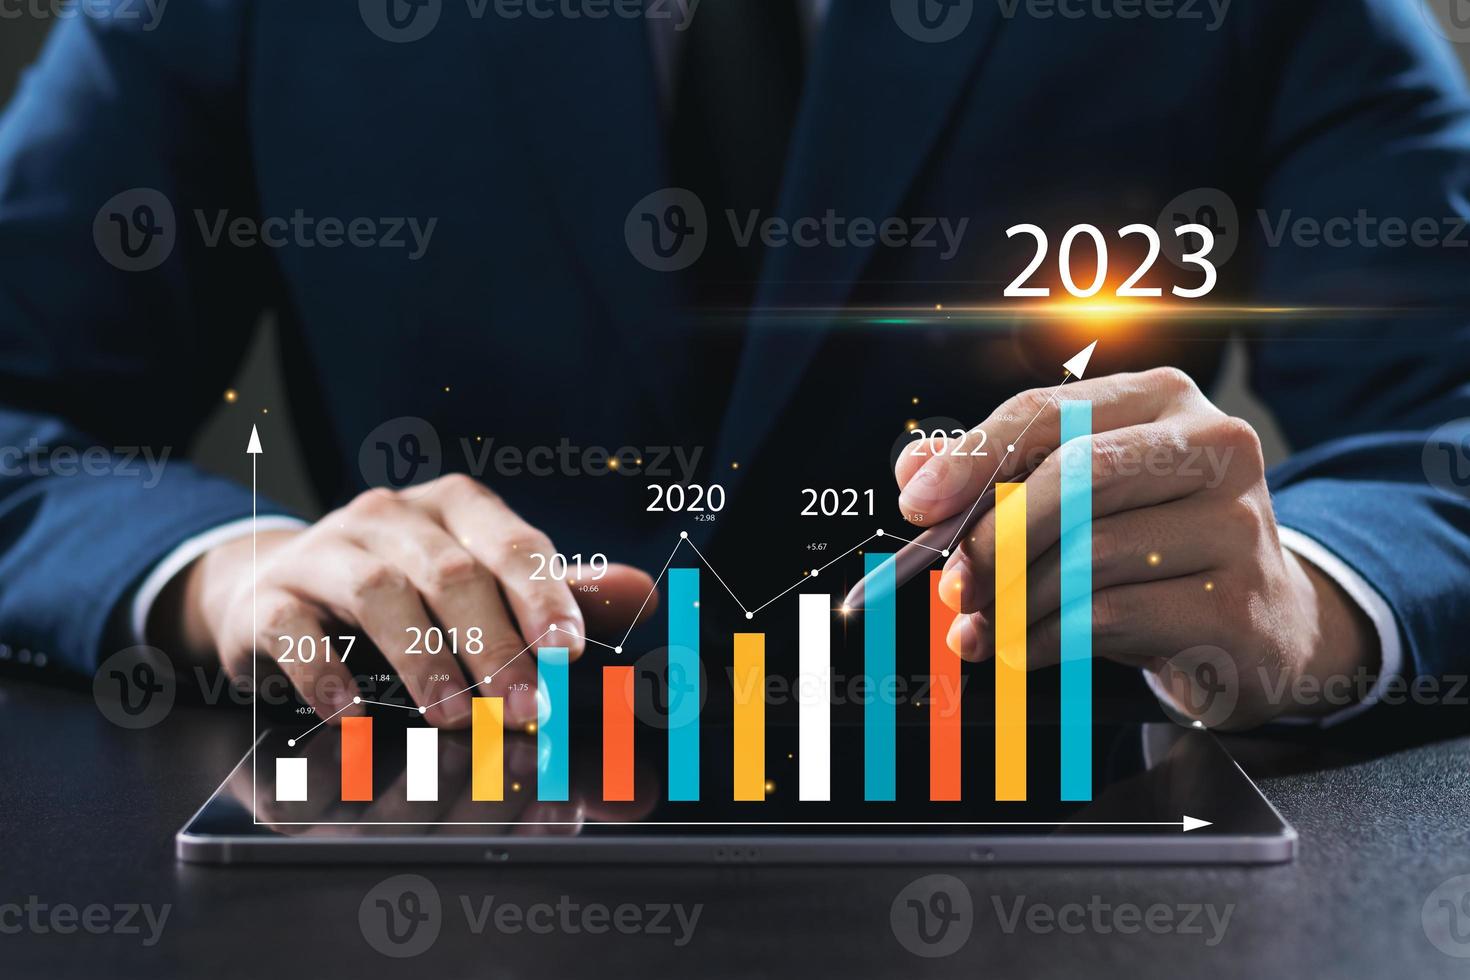 l'homme d'affaires analyse la rentabilité des entreprises en activité avec des graphiques de réalité augmentée numérique, des indicateurs positifs en 2023, l'homme d'affaires calcule les données financières pour les investissements à long terme. photo